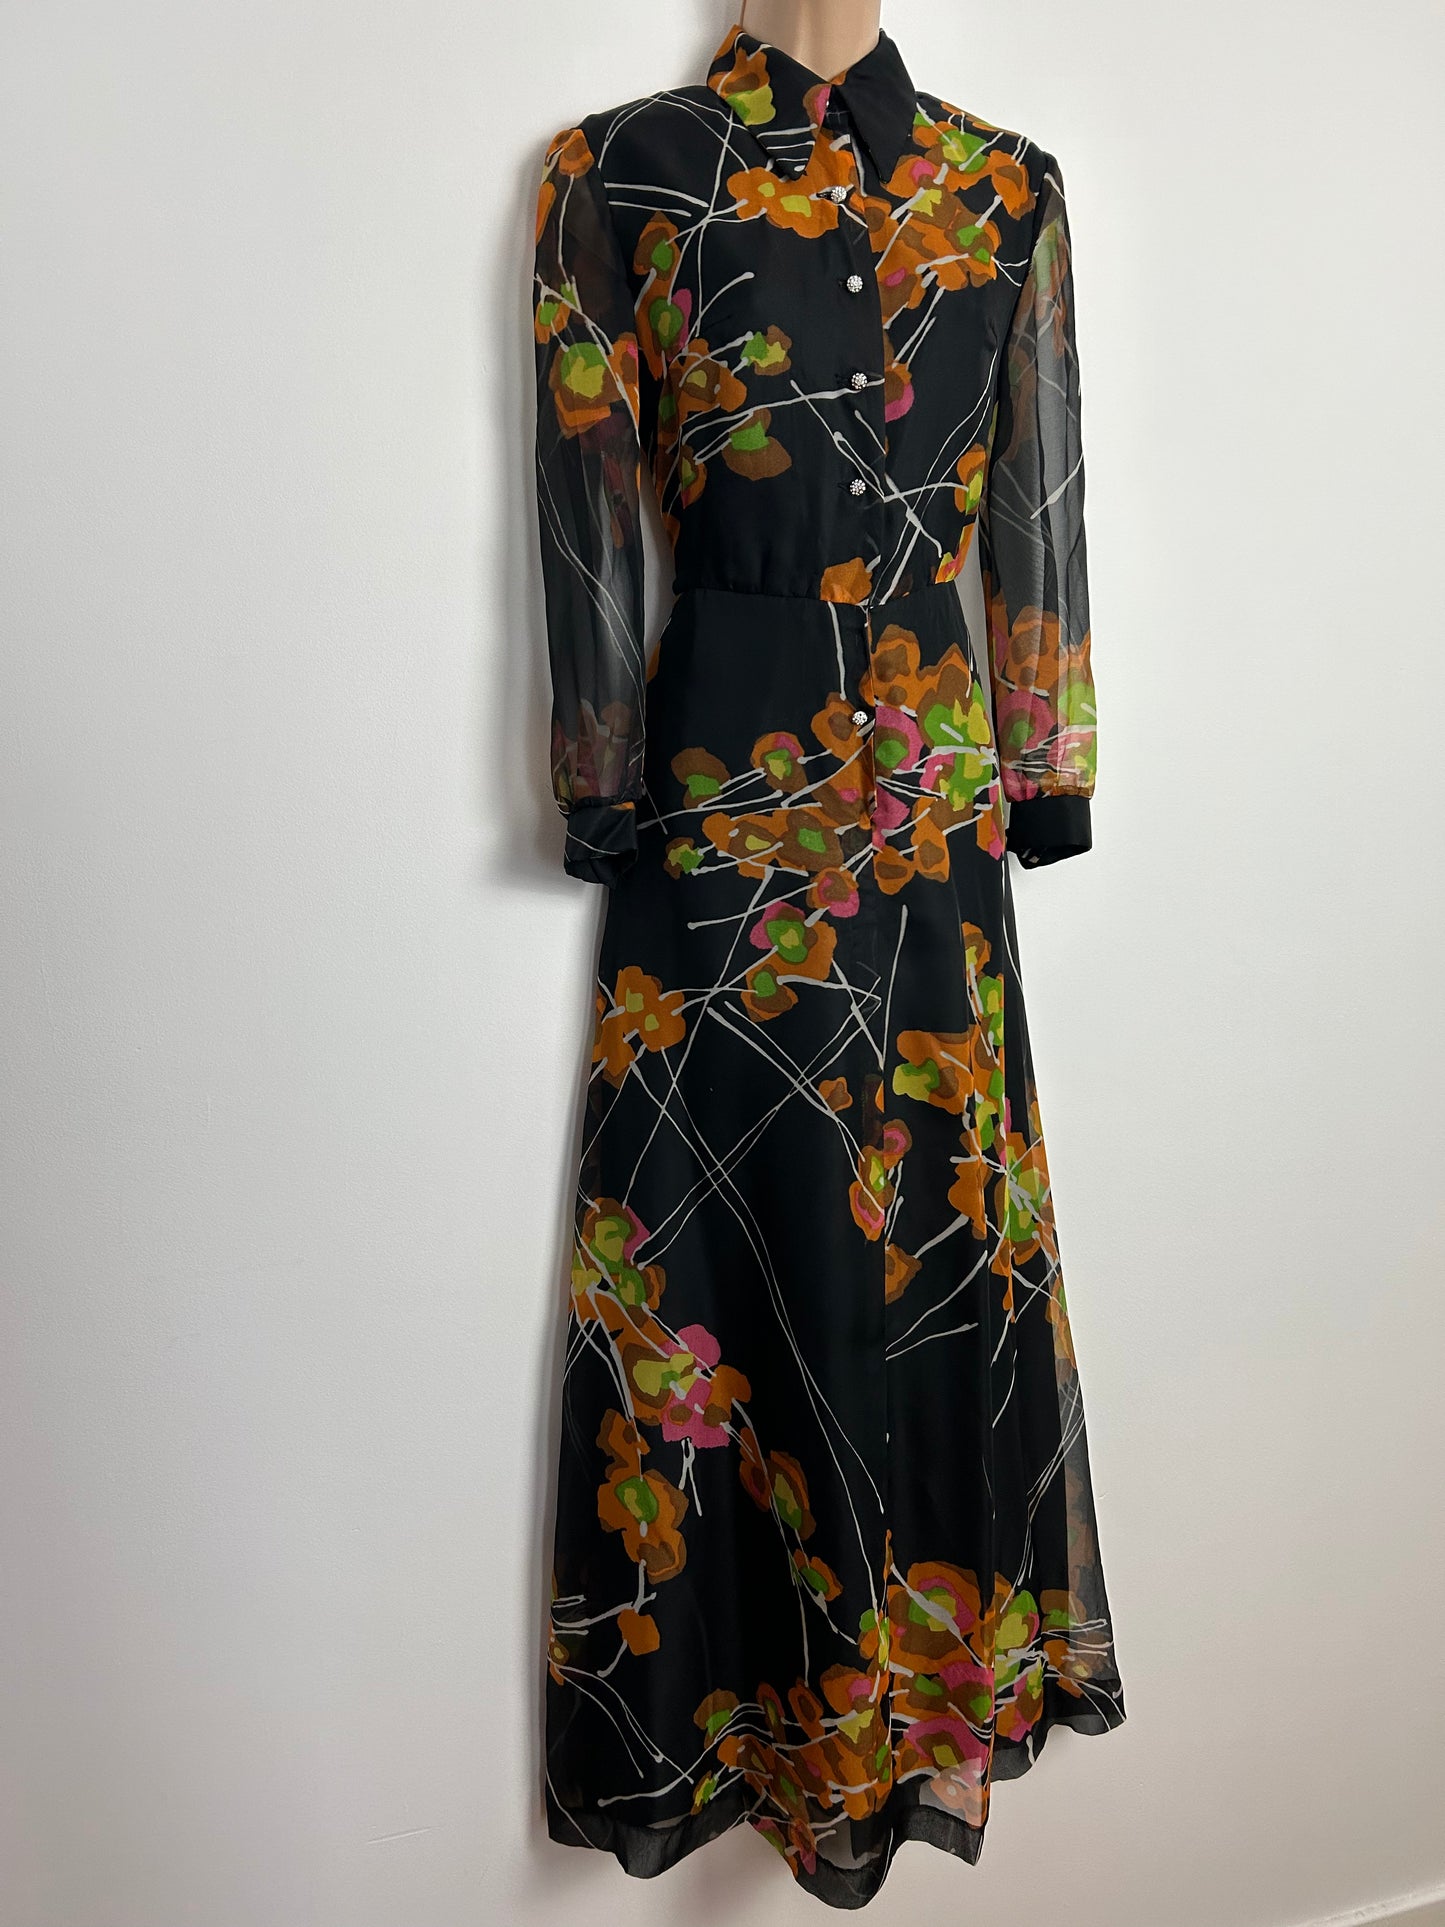 Vintage 1970s UK Size 10 Black Orange & Green Floral Print Long Sleeve Boho Maxi Dress by Verena Modelle